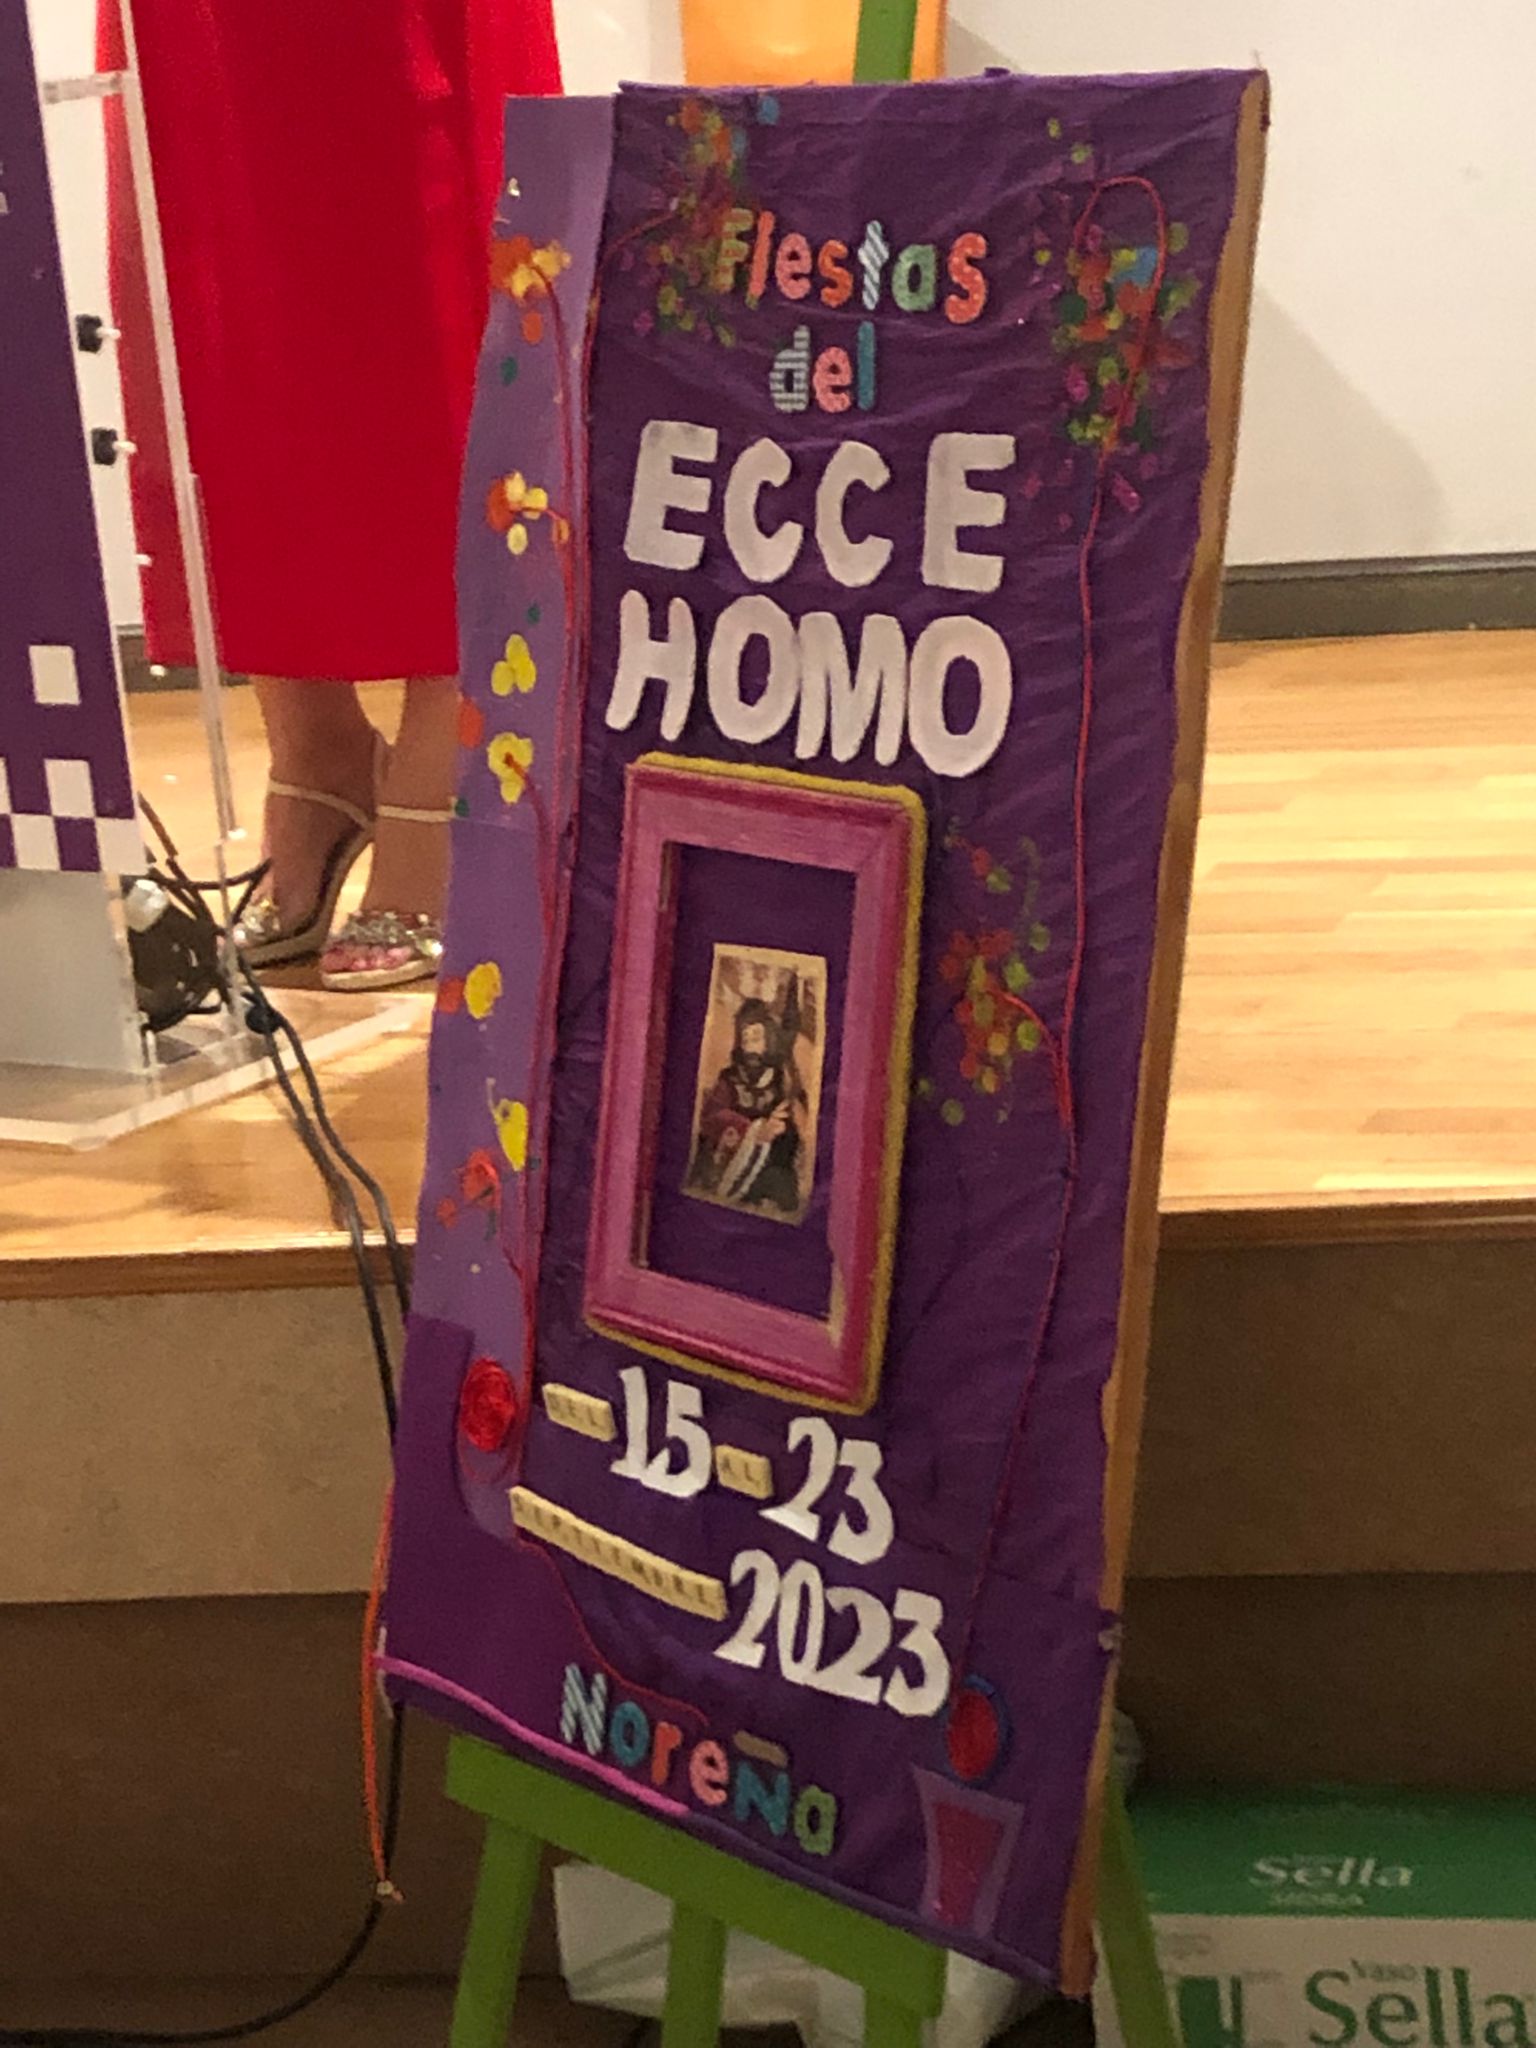 Fiestas Ecce Homo